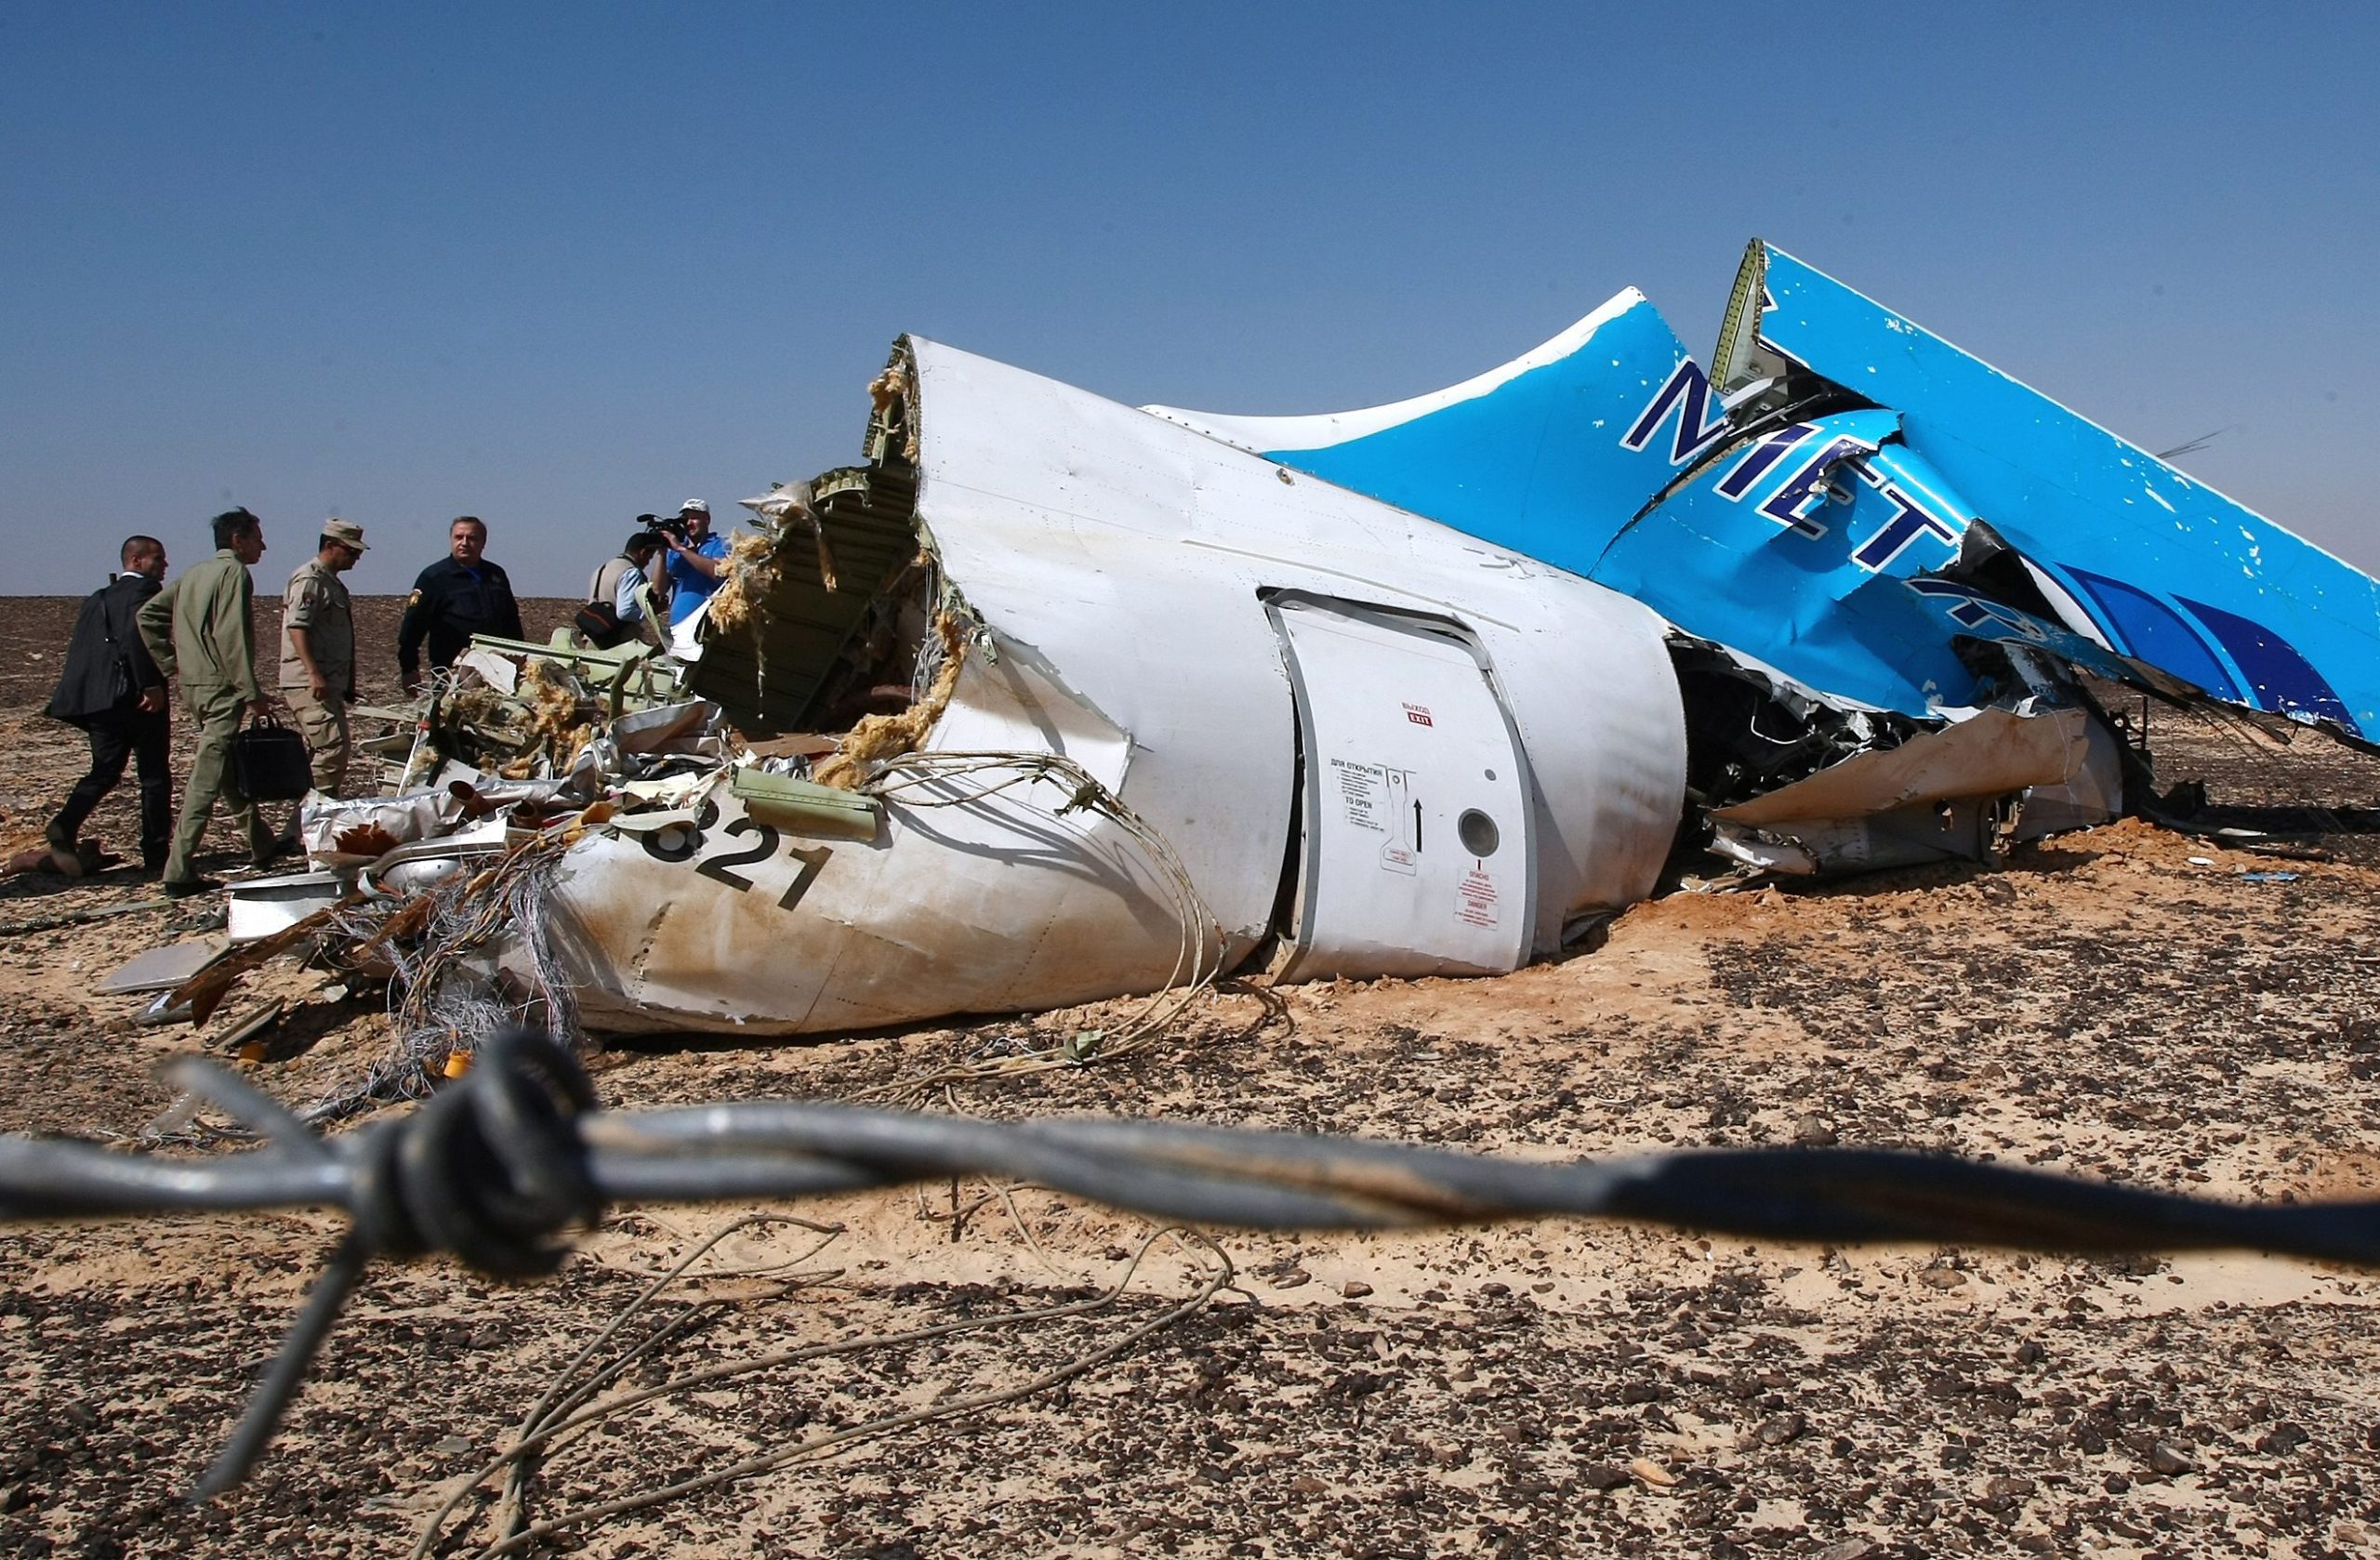 Σοκαριστικό βίντεο λίγο μετά τη συντριβή του Airbus στην Αίγυπτο